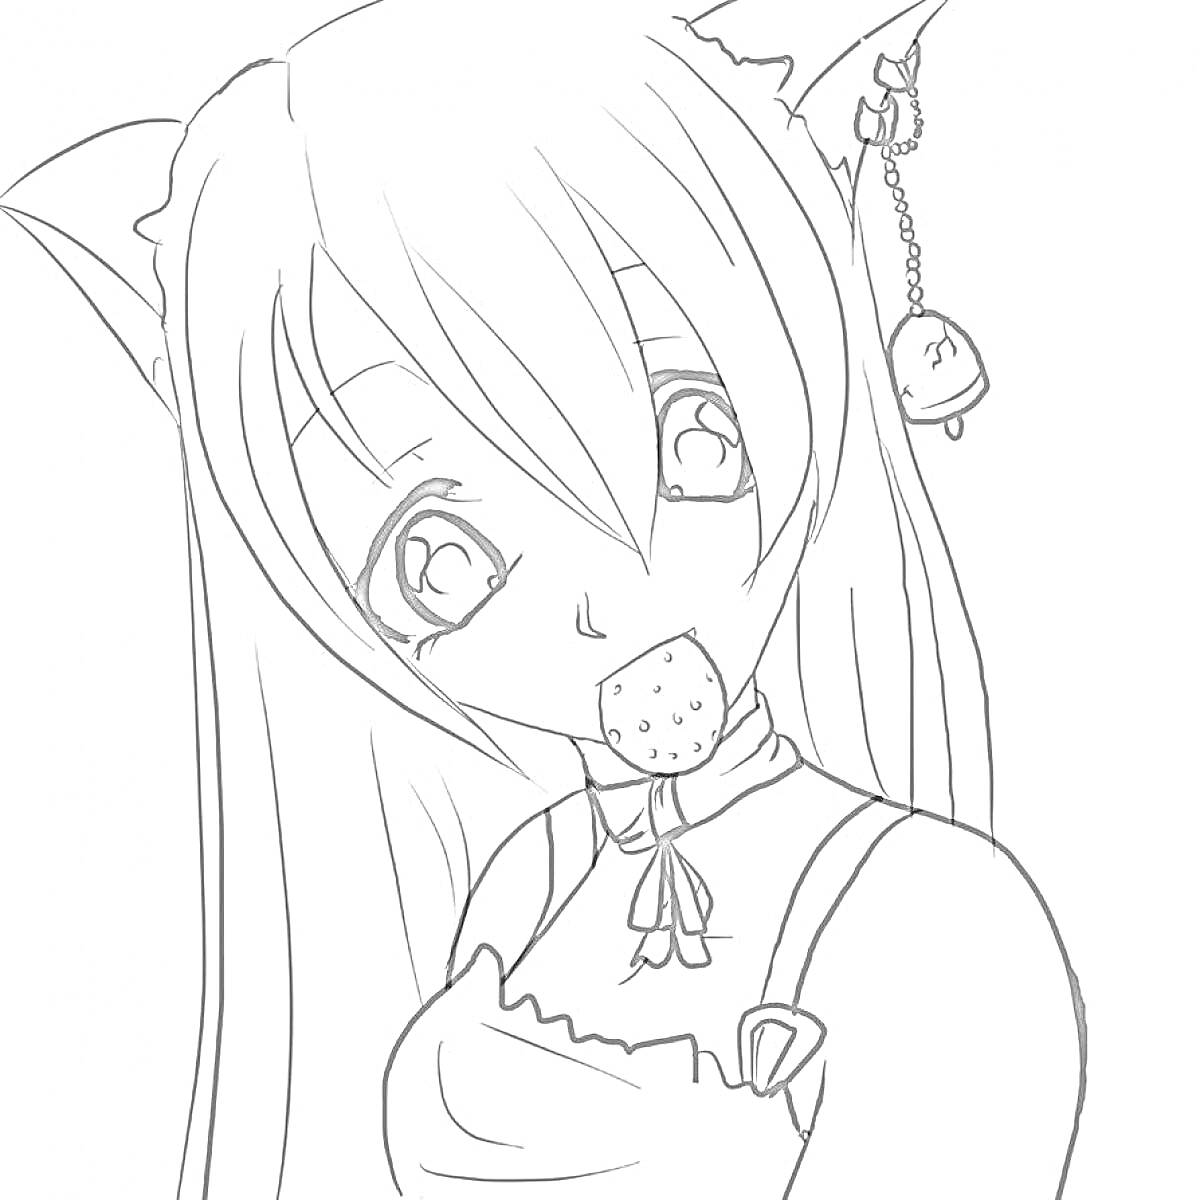 Раскраска Аниме девушка с ушками кошки, с печеньем во рту, с длинными волосами, в платье с бантиком, с кулоном колокольчиком на ушке.